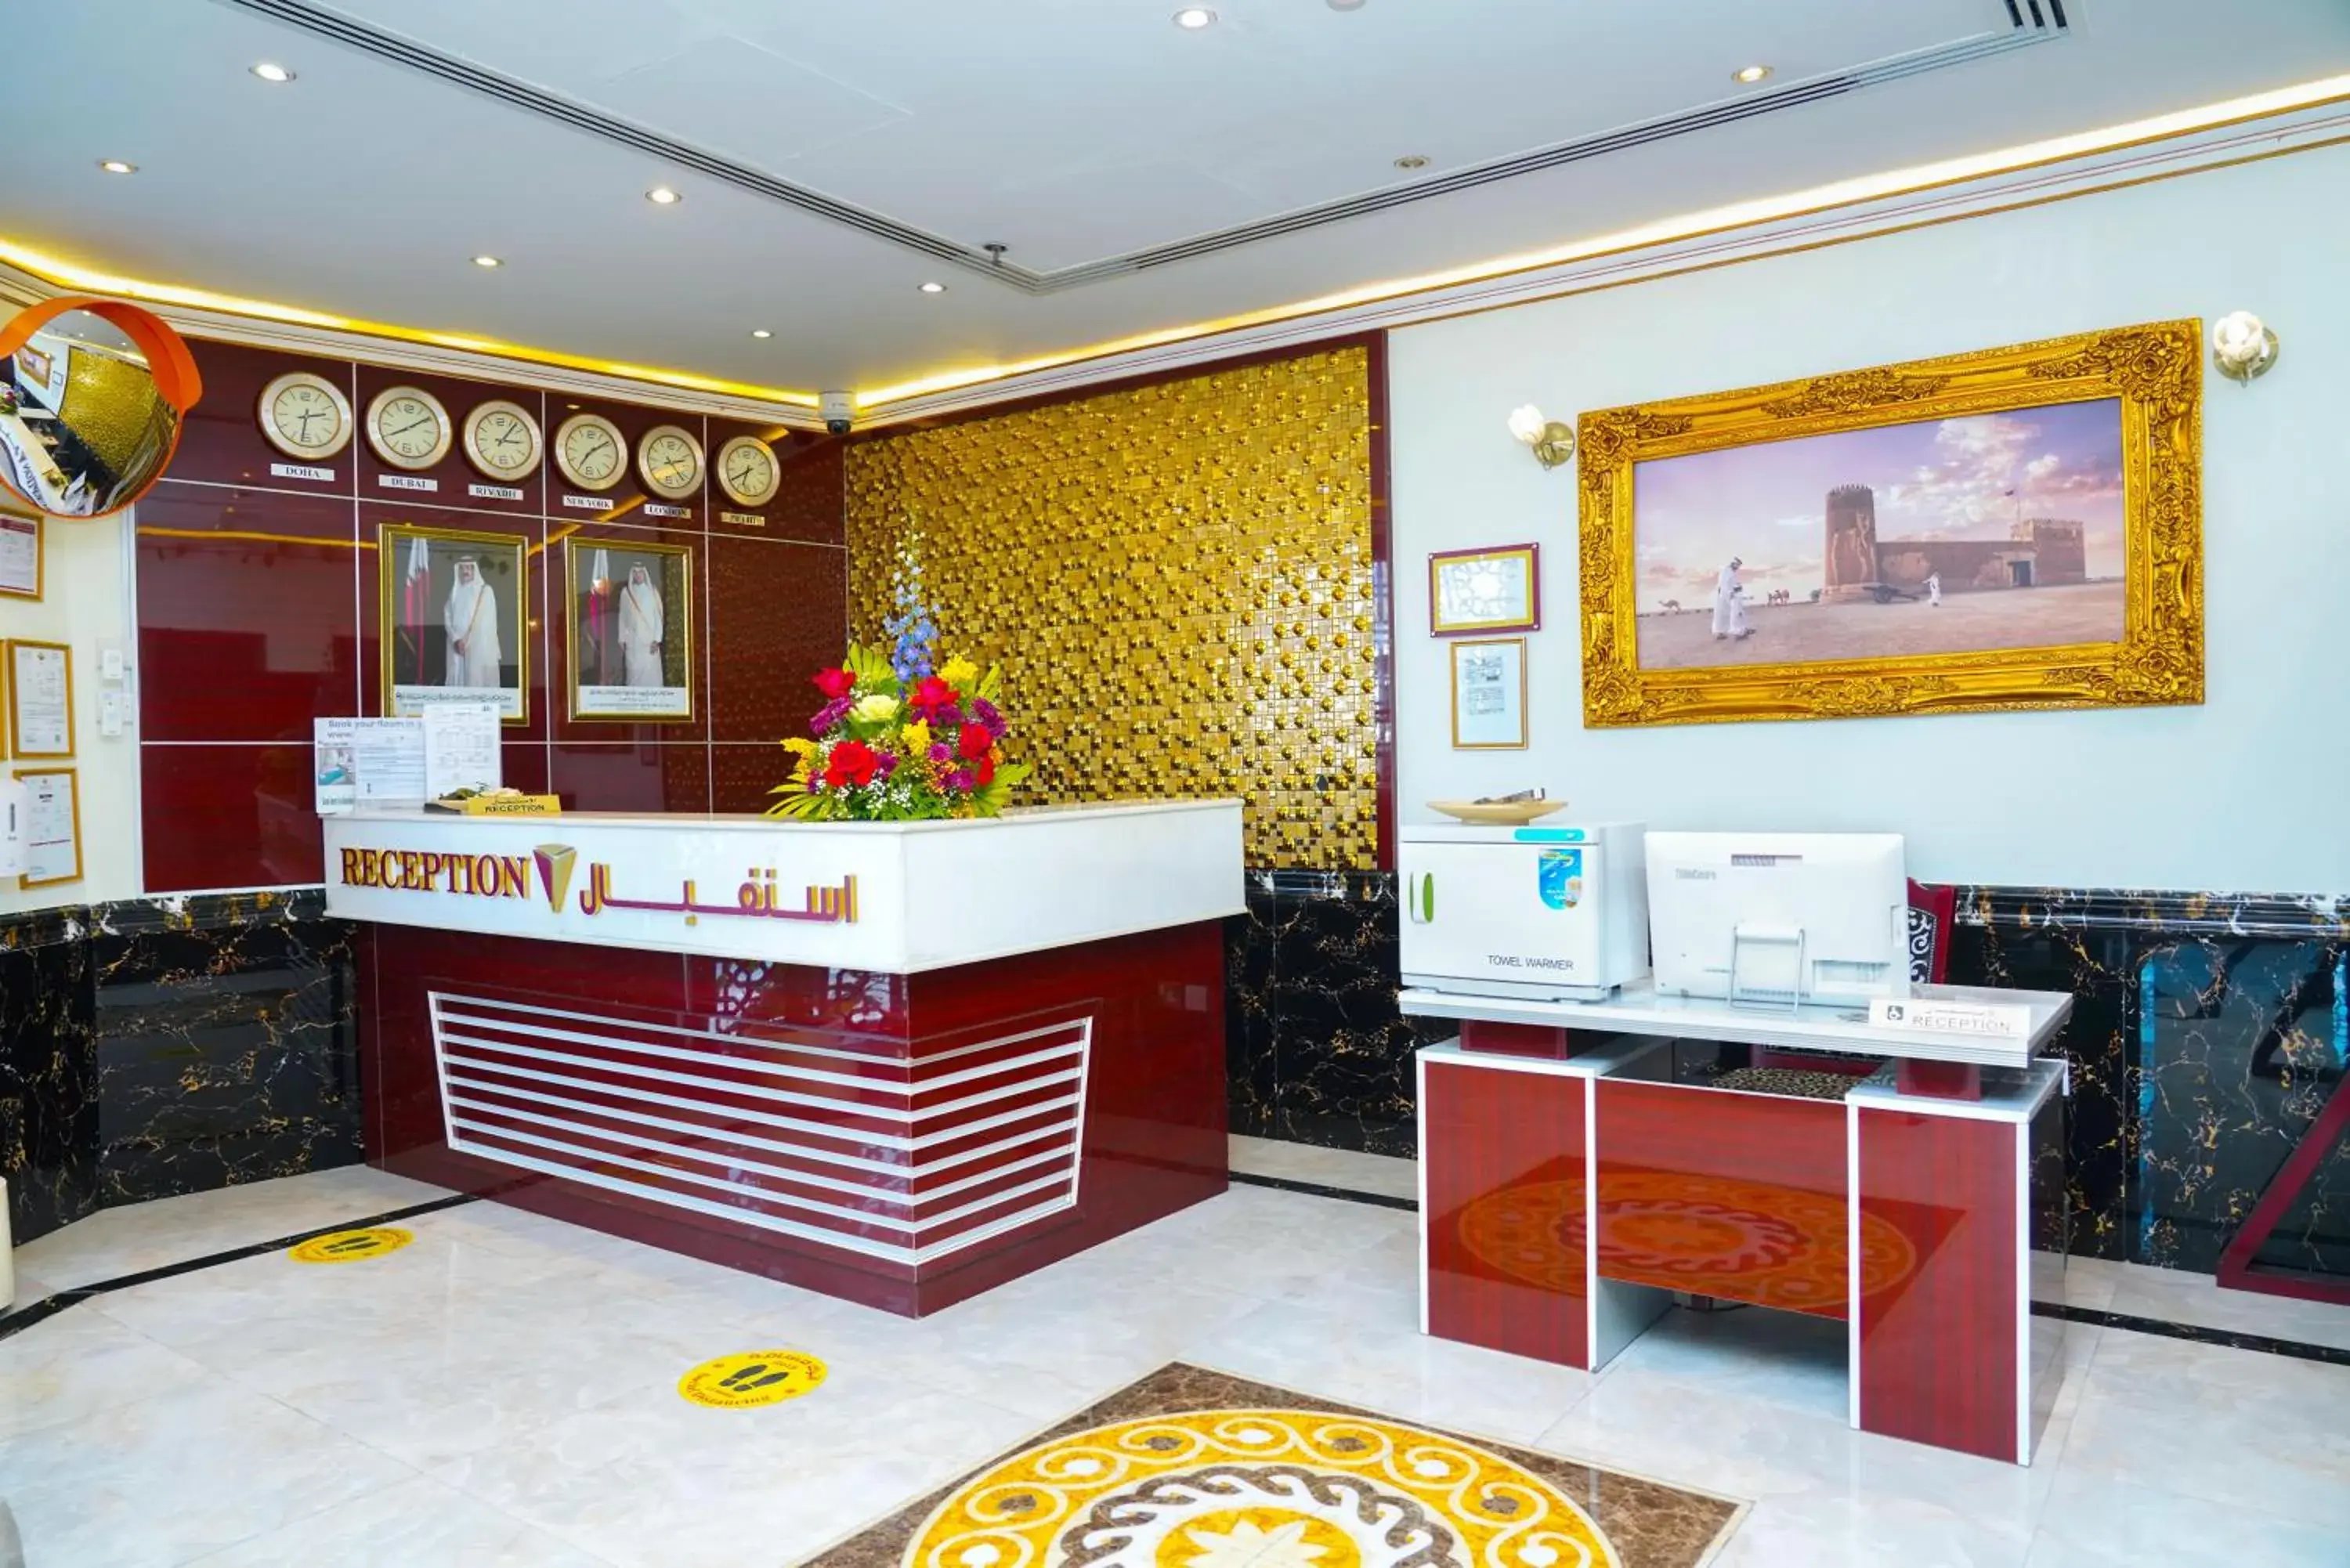 Lobby or reception in La Villa Palace Hotel